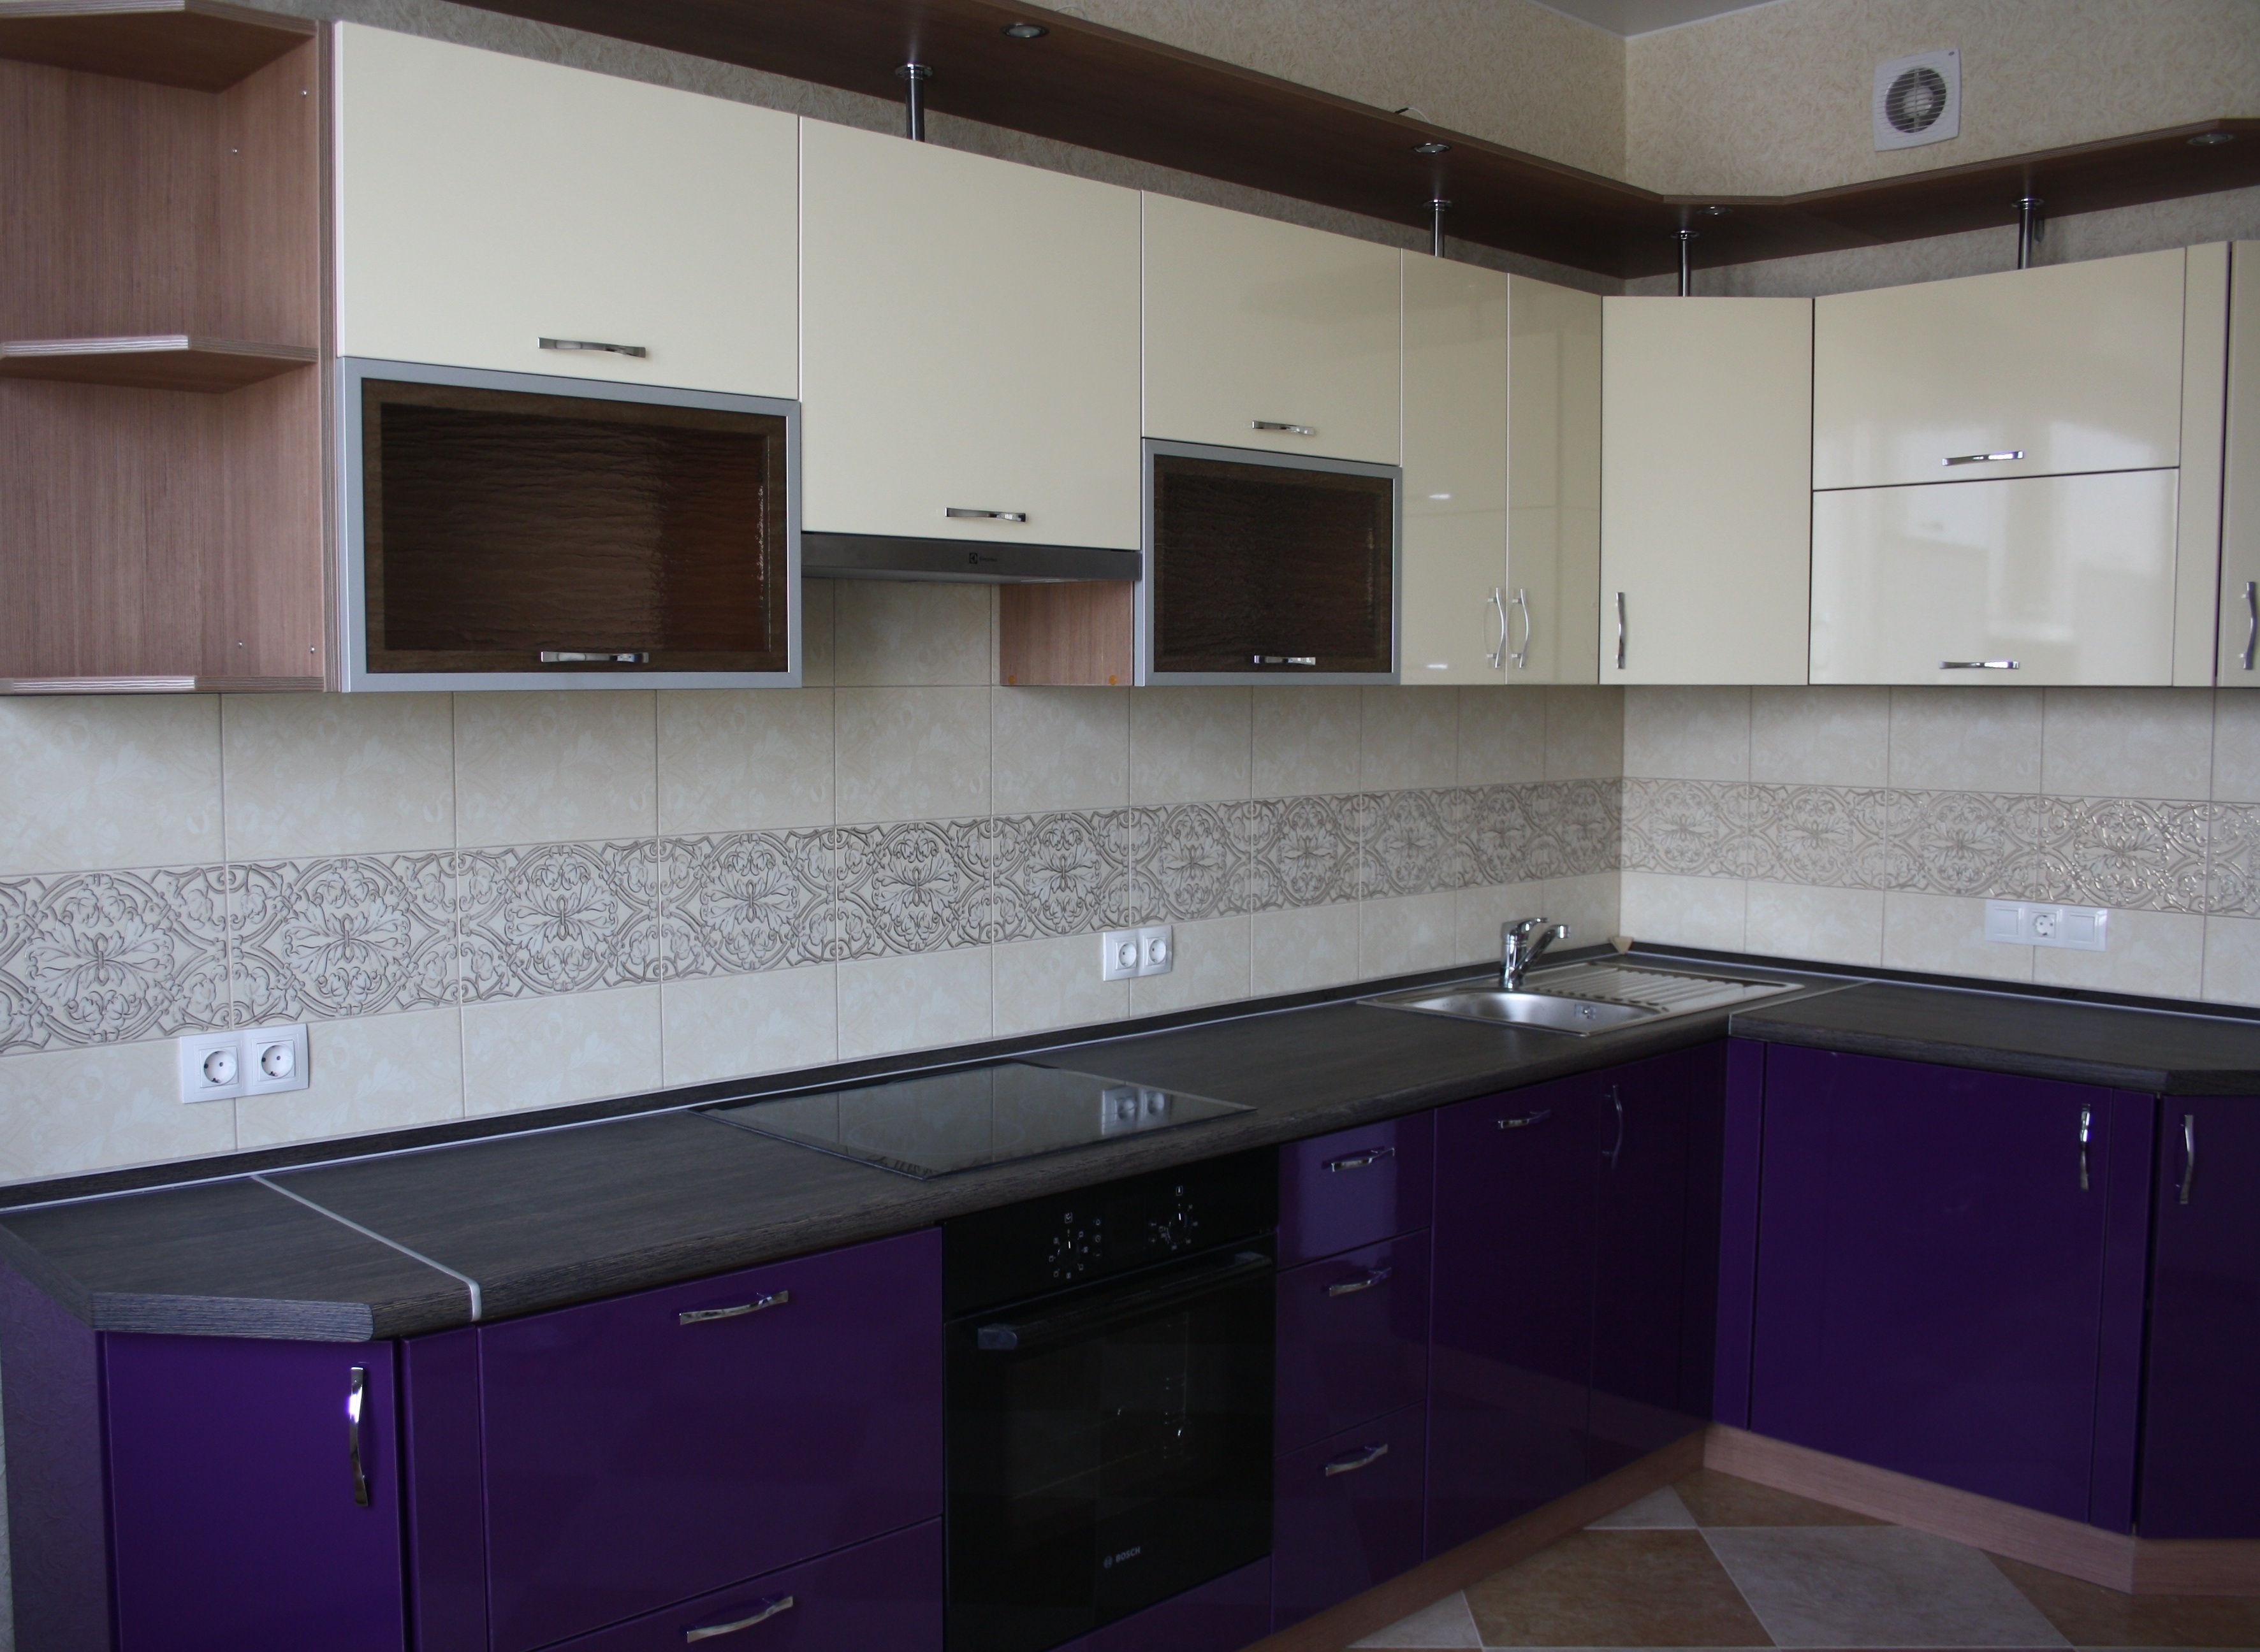 Бежевая кухня с прожилками фиолетового